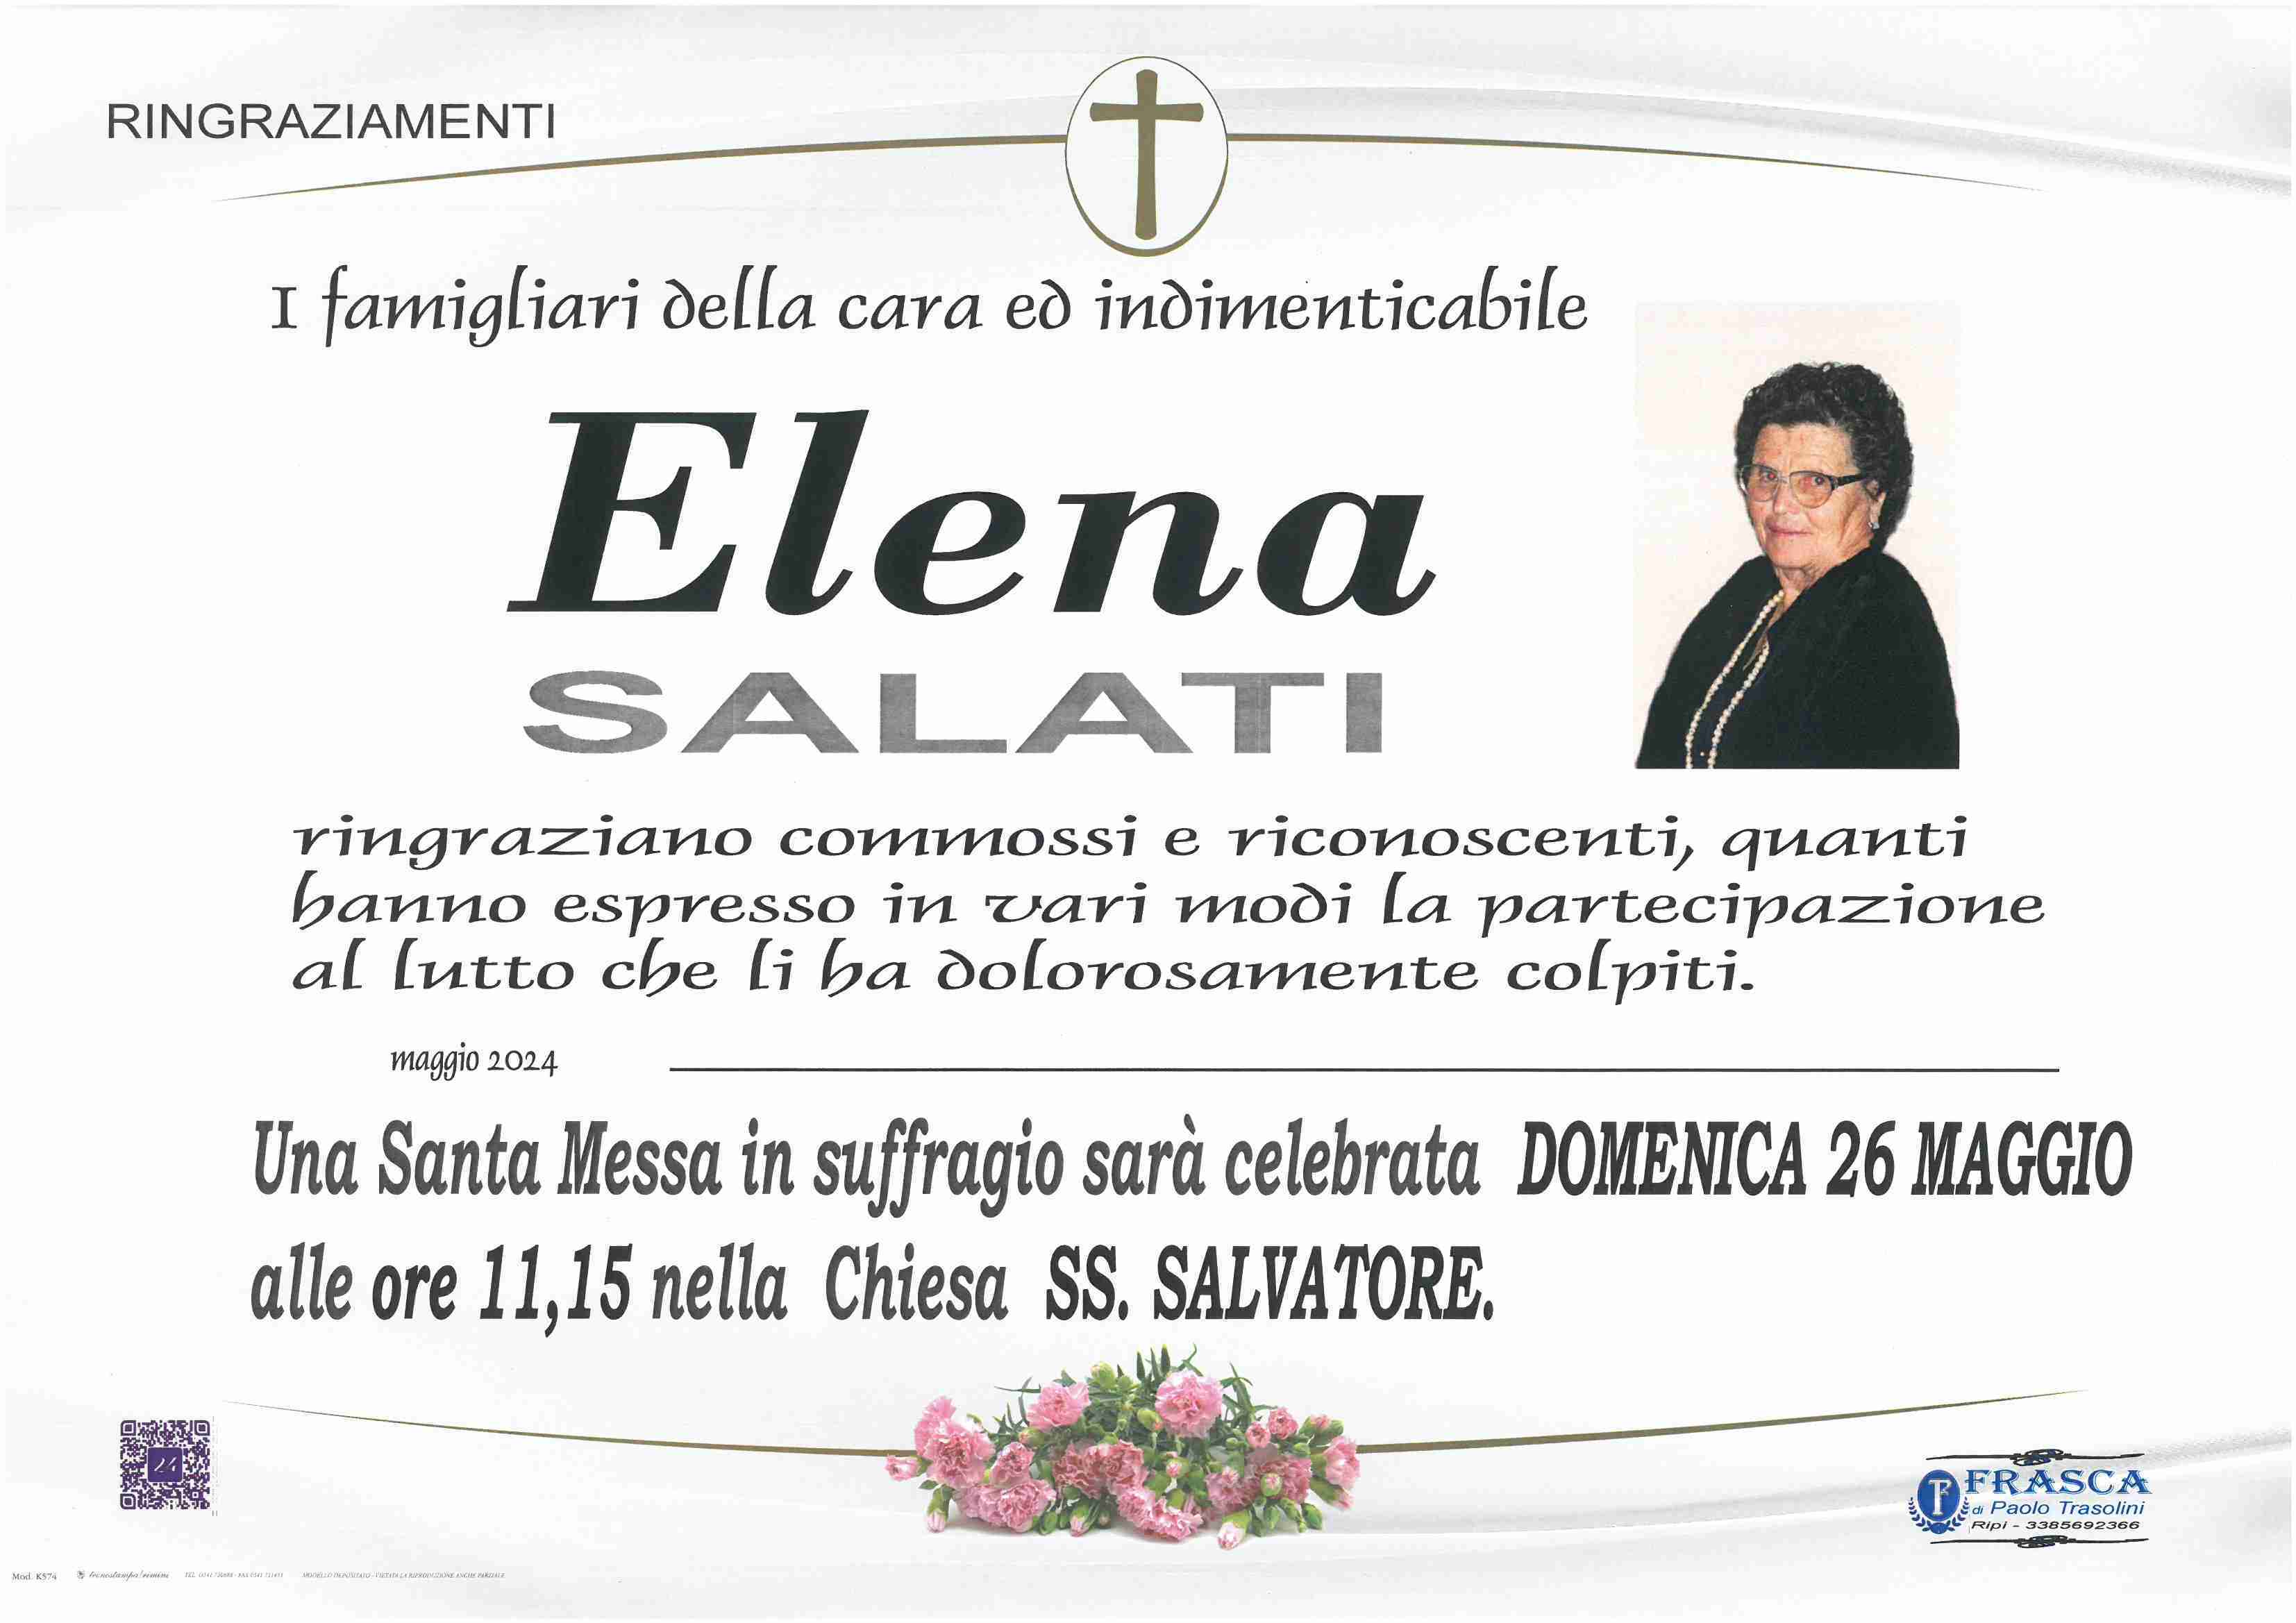 Elena Salati